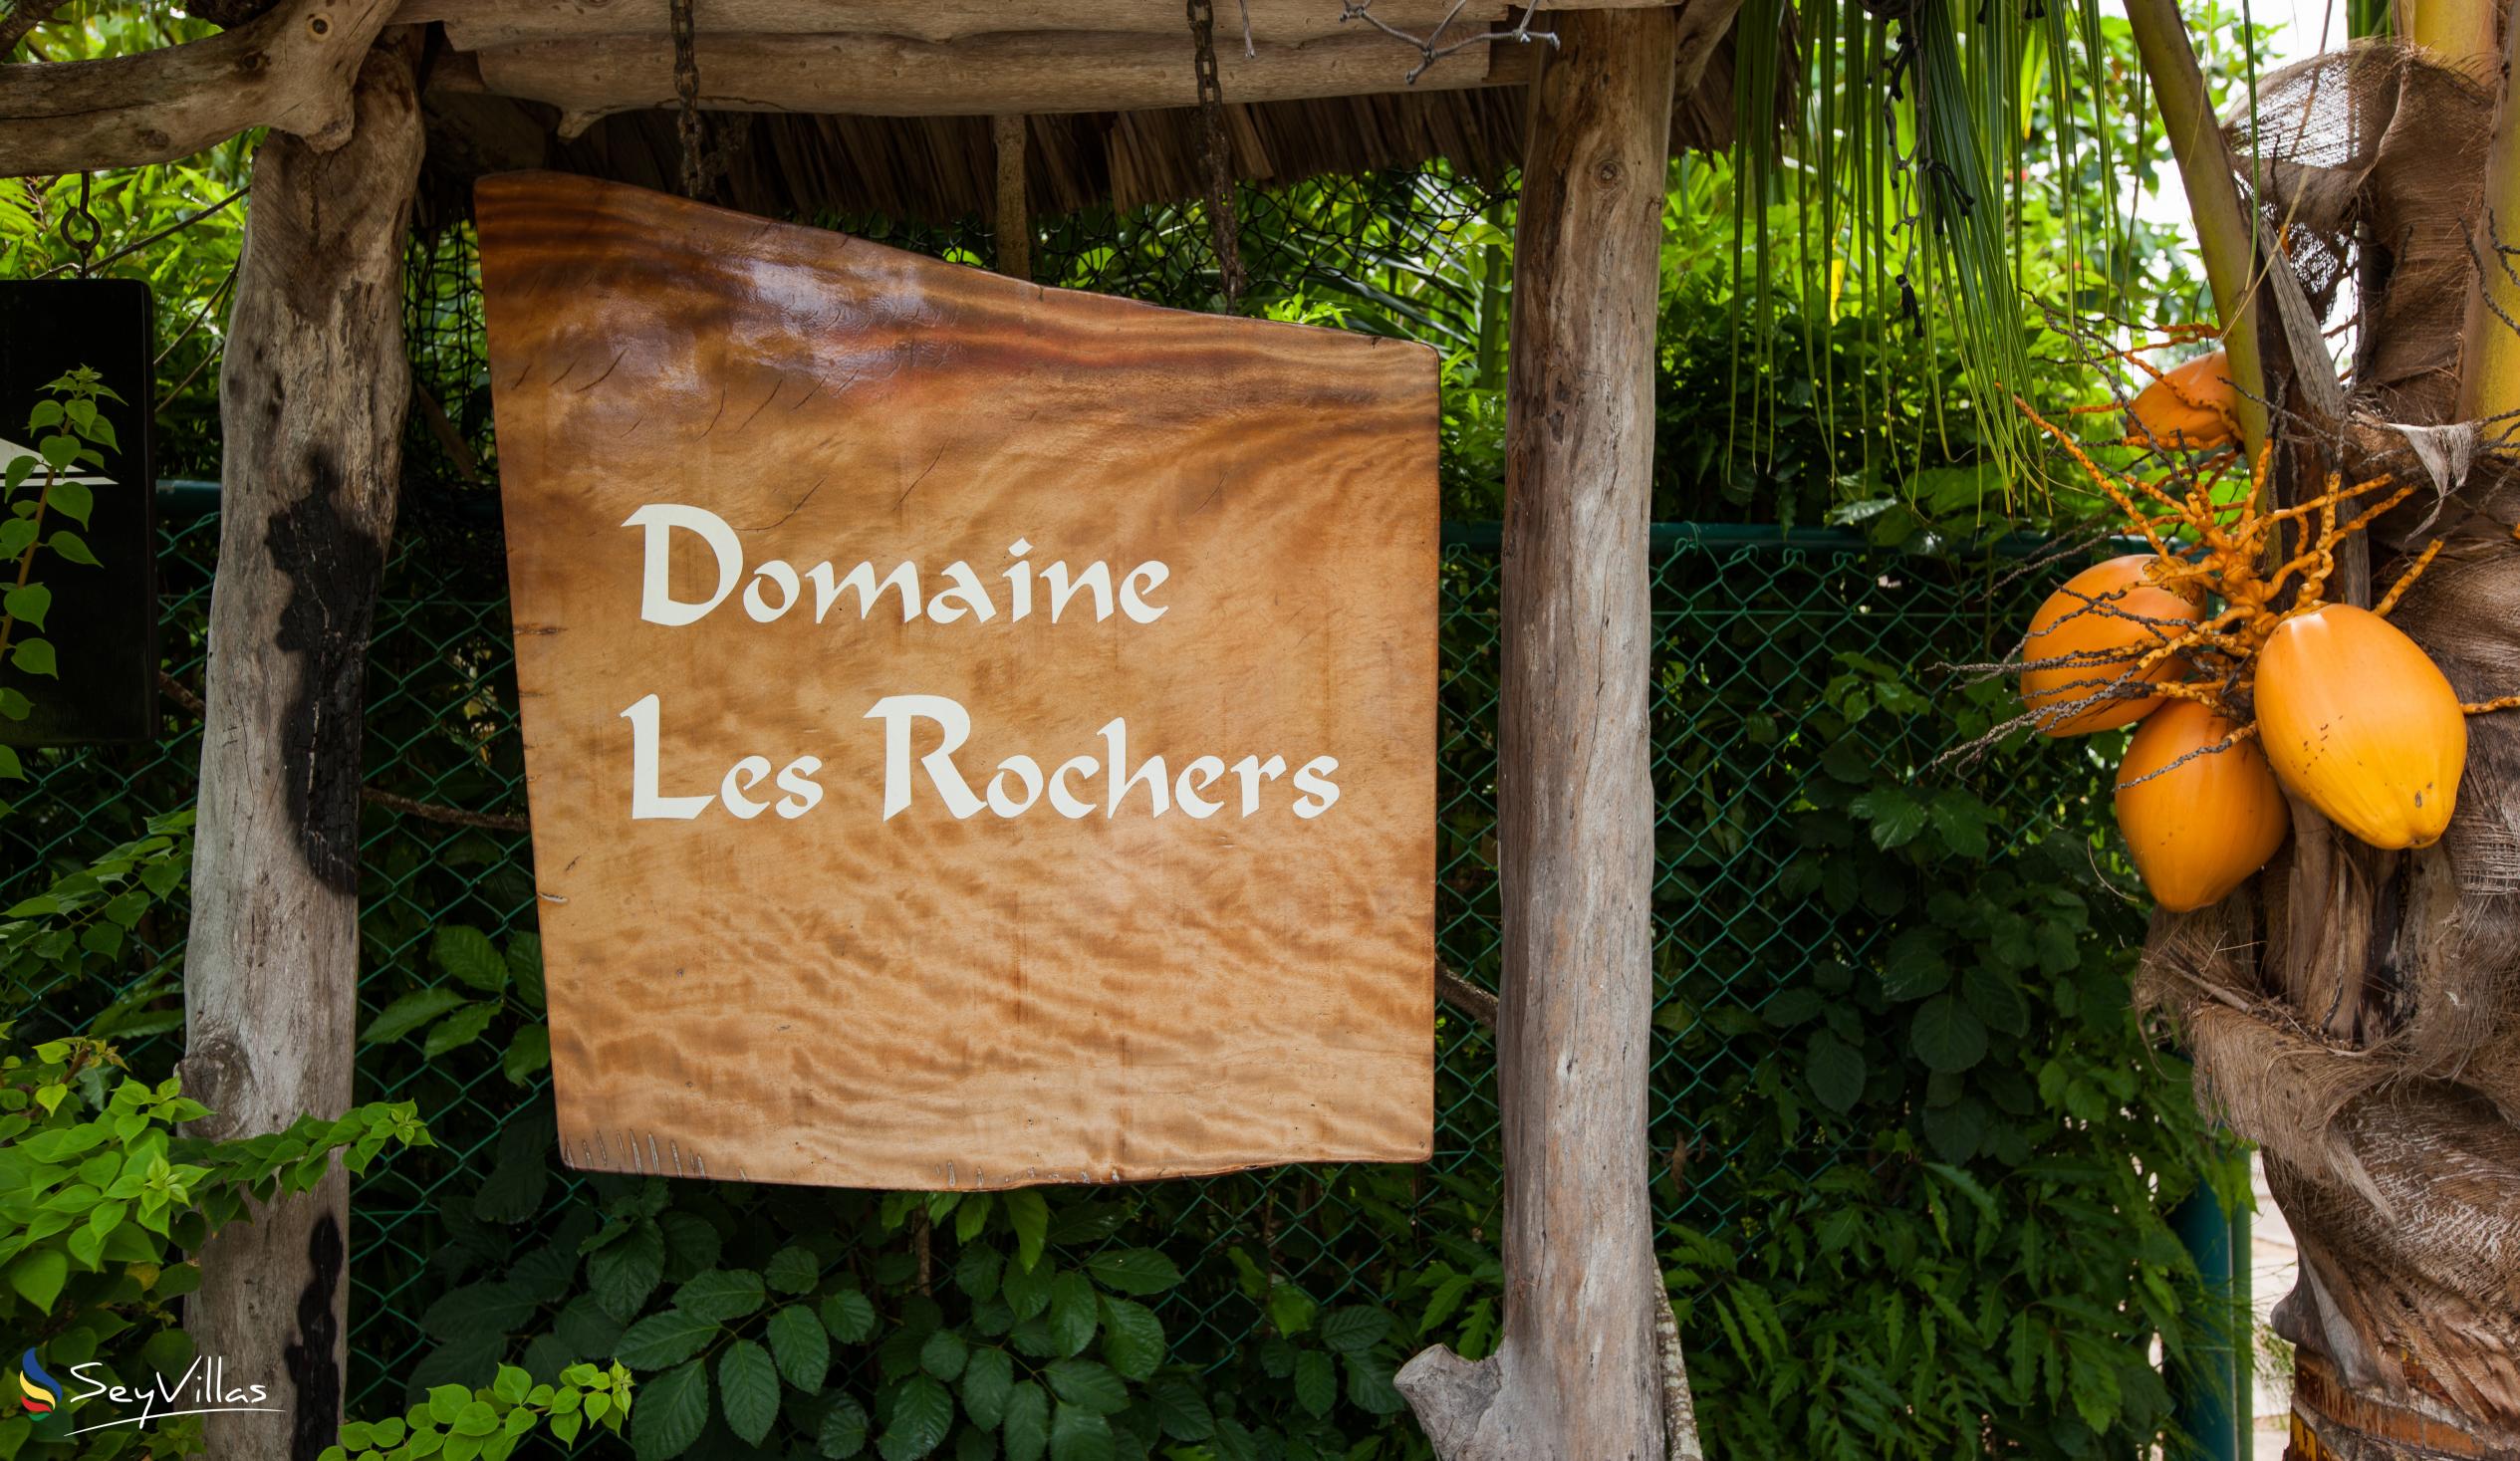 Foto 4: Domaine Les Rochers - Esterno - La Digue (Seychelles)